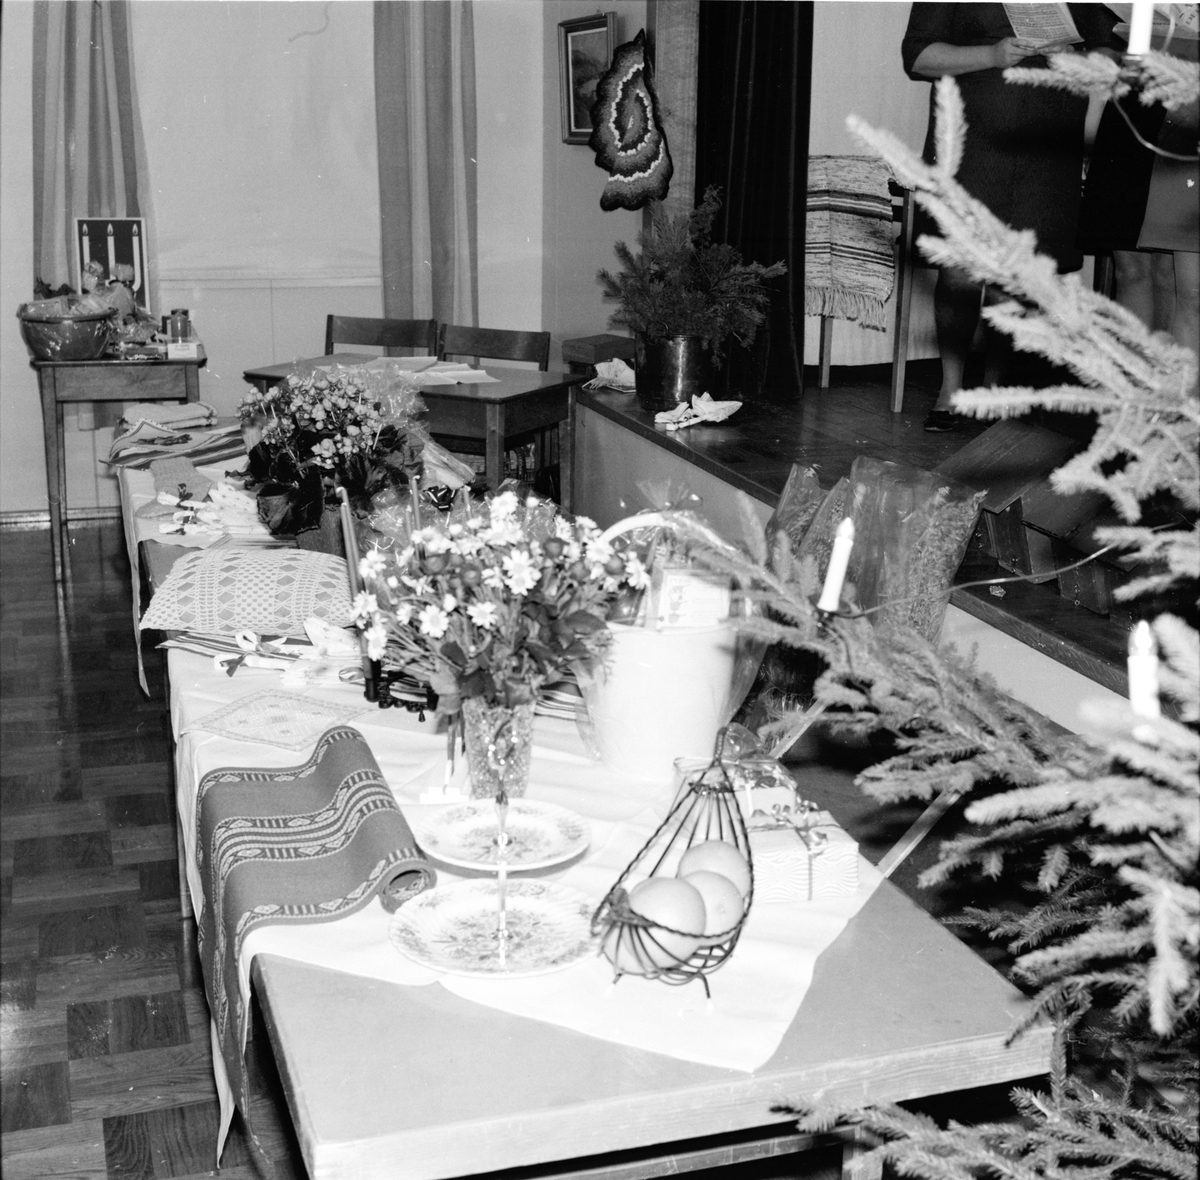 Flästa,
Logens julfest,
Kören sjunger,
Dec 1969